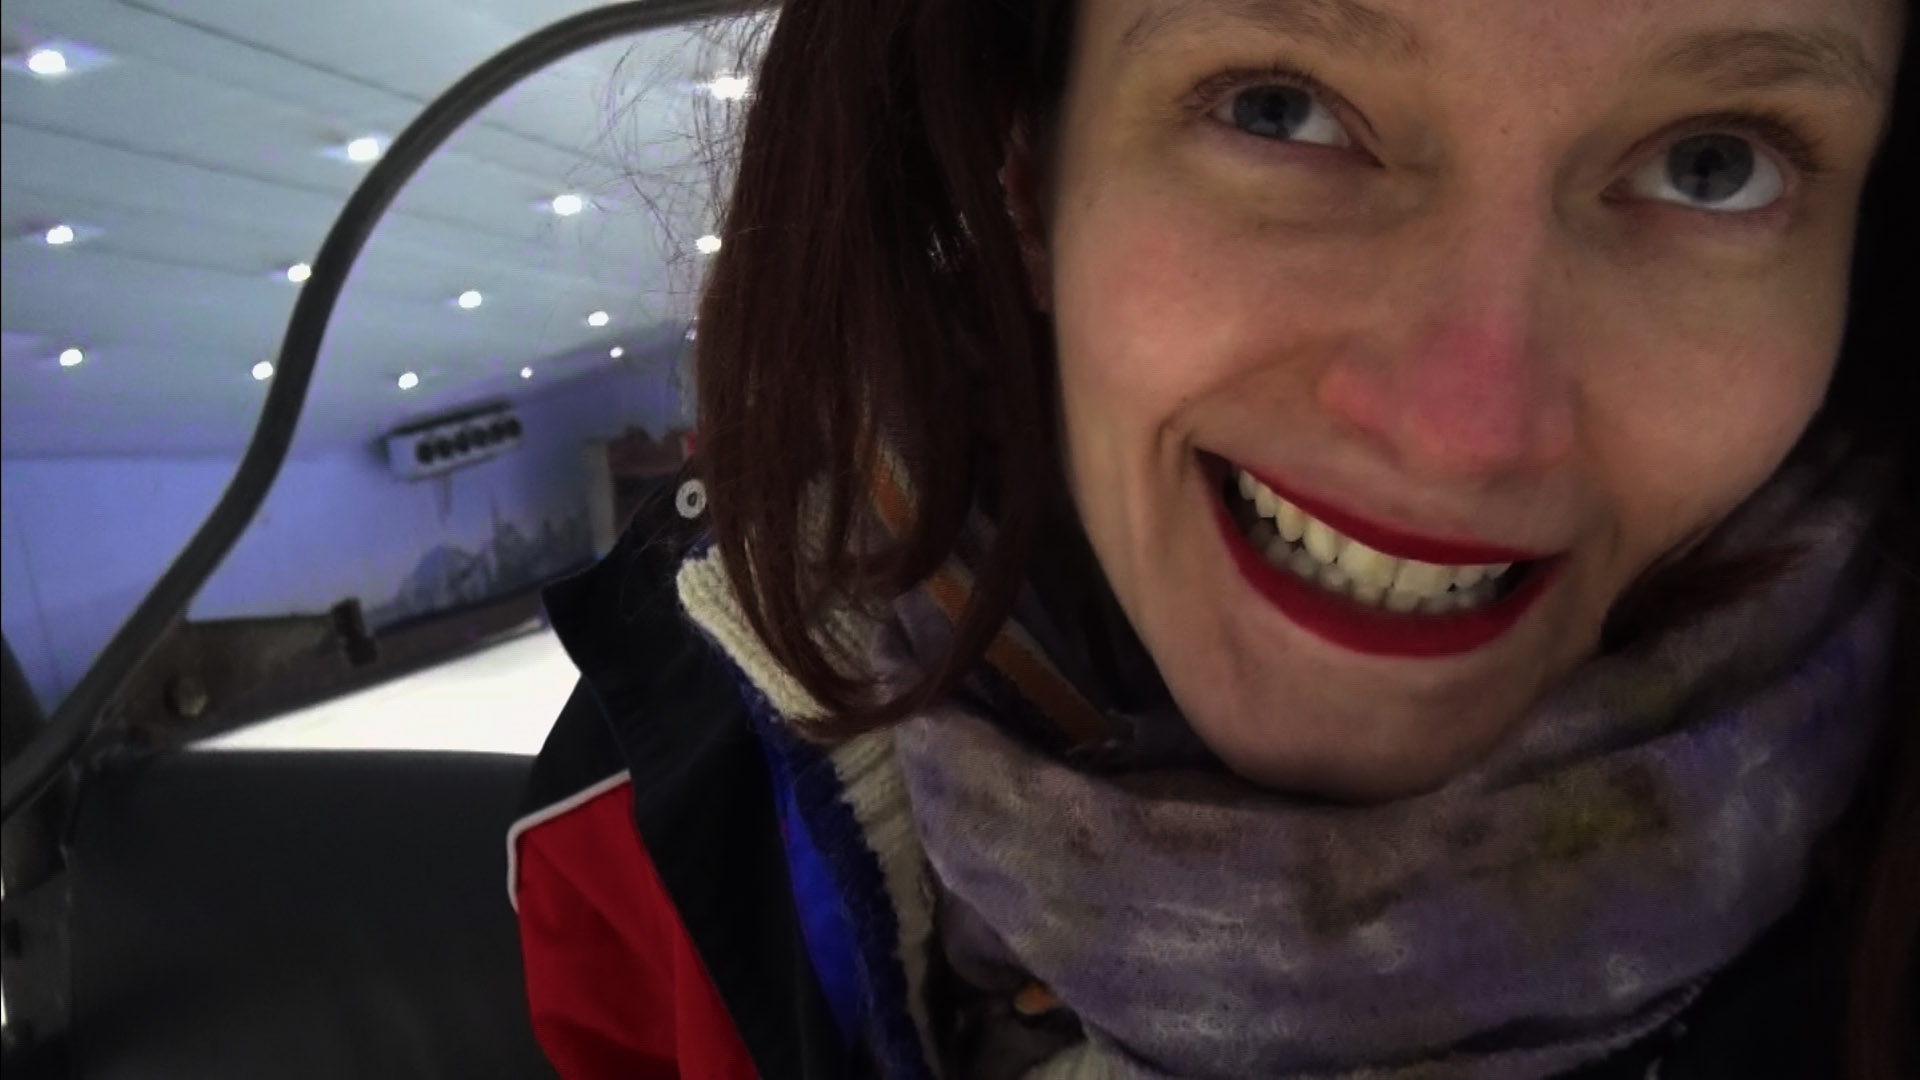 Le ski, la vraie nature, le vide, un court métrage de Clara Thomine au Cinéma Nova le 22 janvier